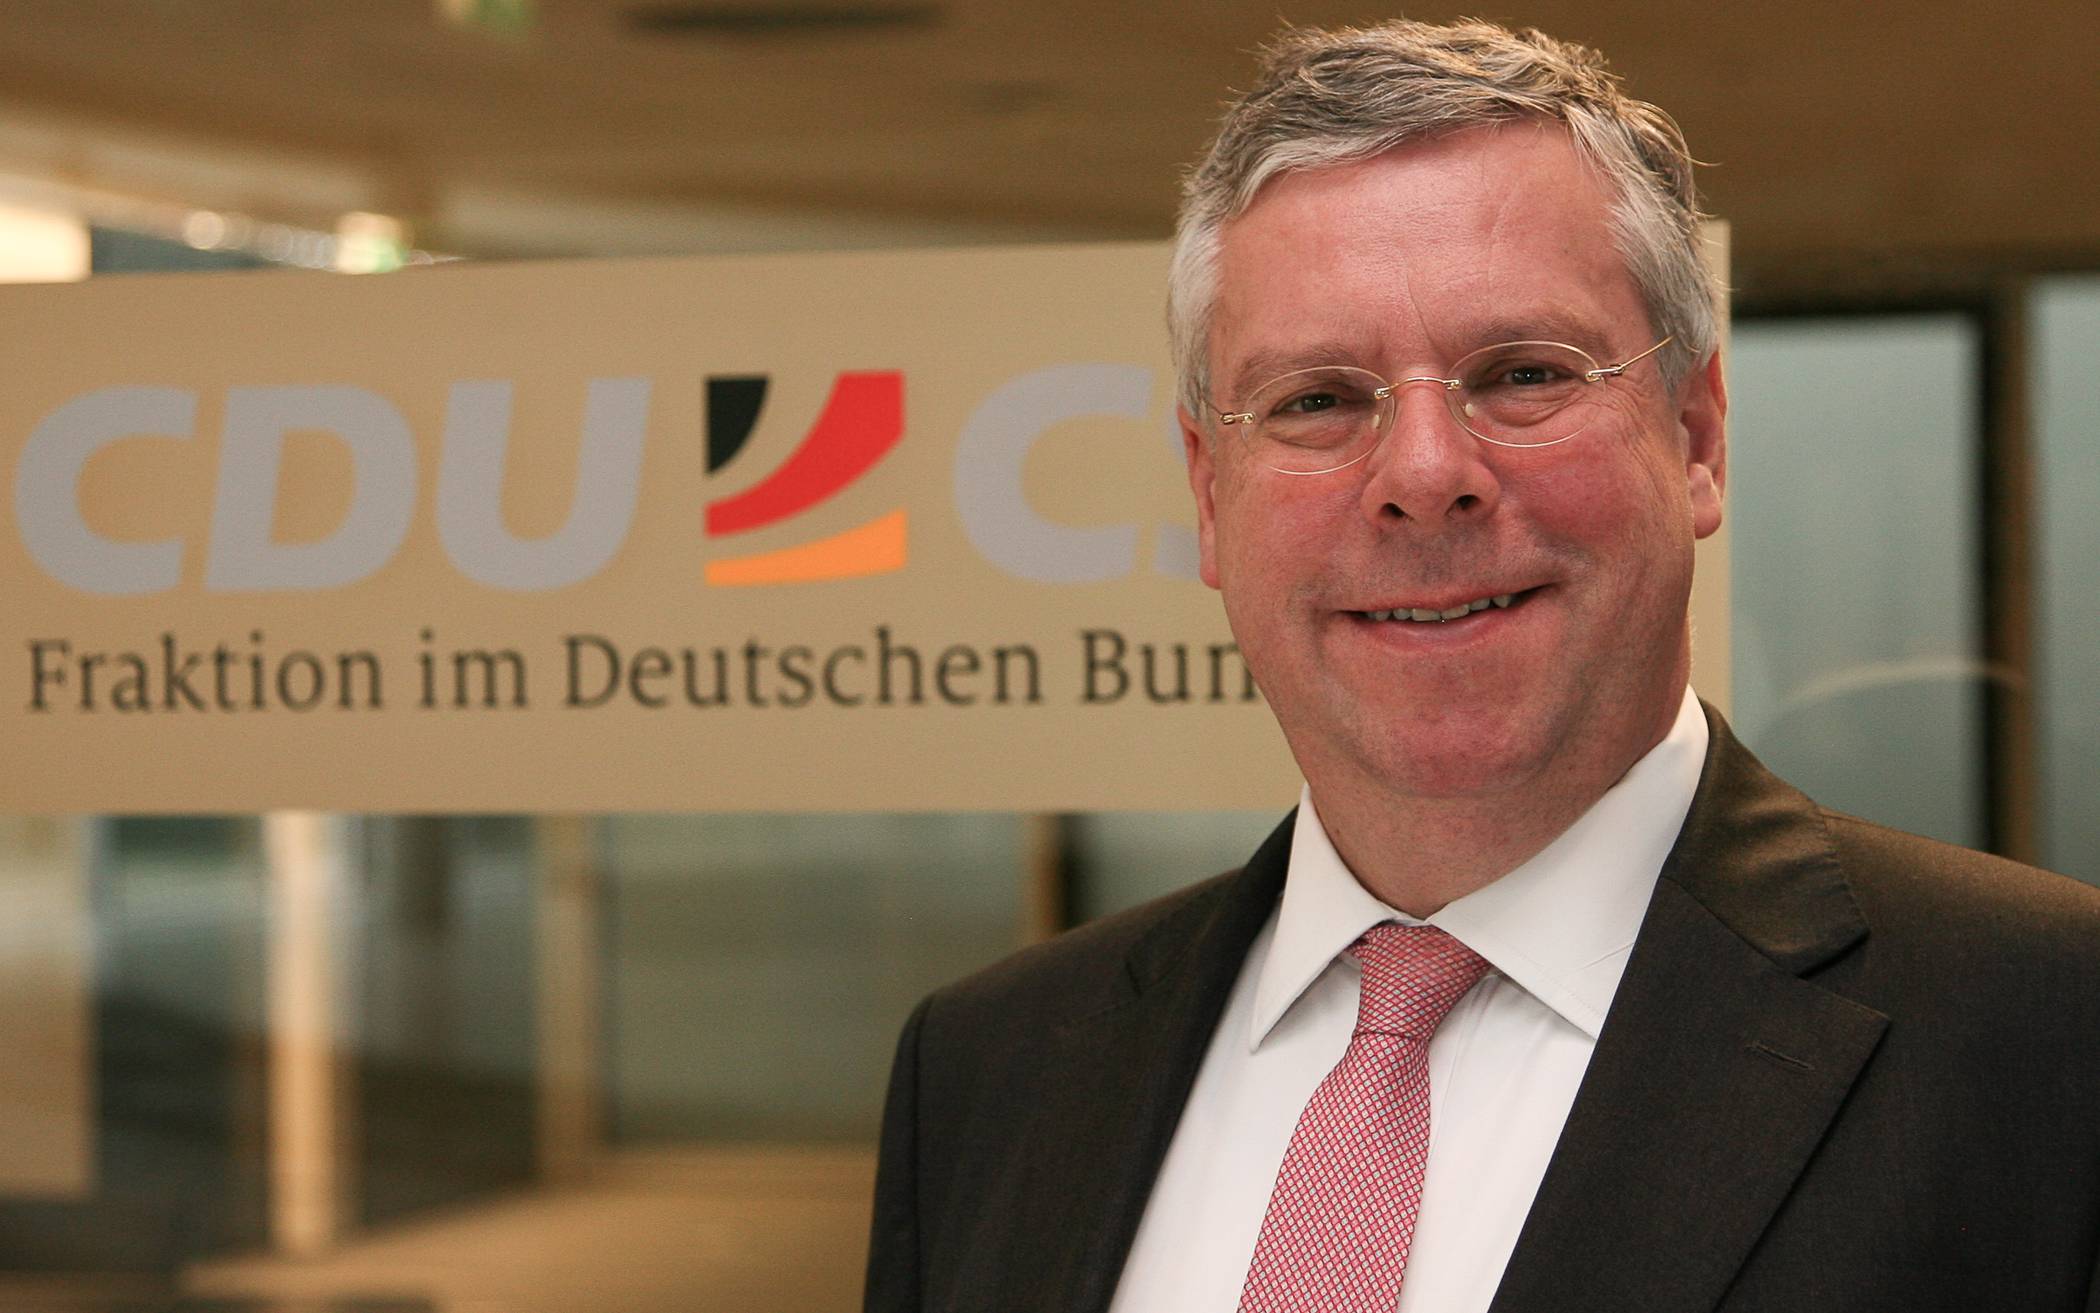  Bundestagsabgeordneter Jürgen Hardt, aktuell selbst in Quarantäne.  